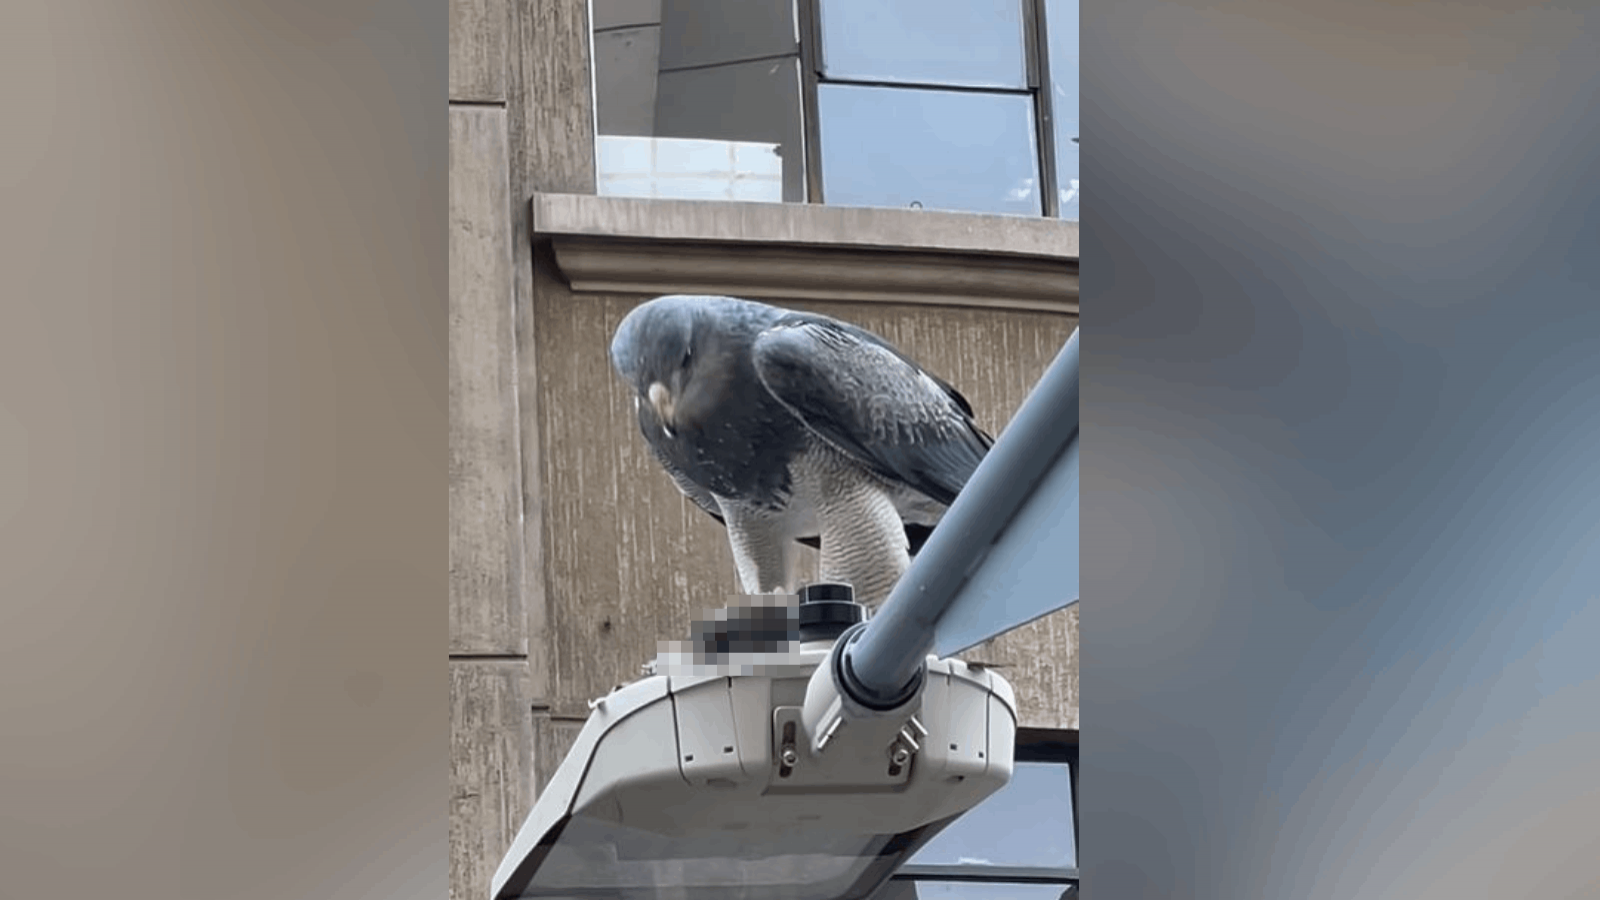 Un águila fue captada comiendo en pleno centro de Santiago